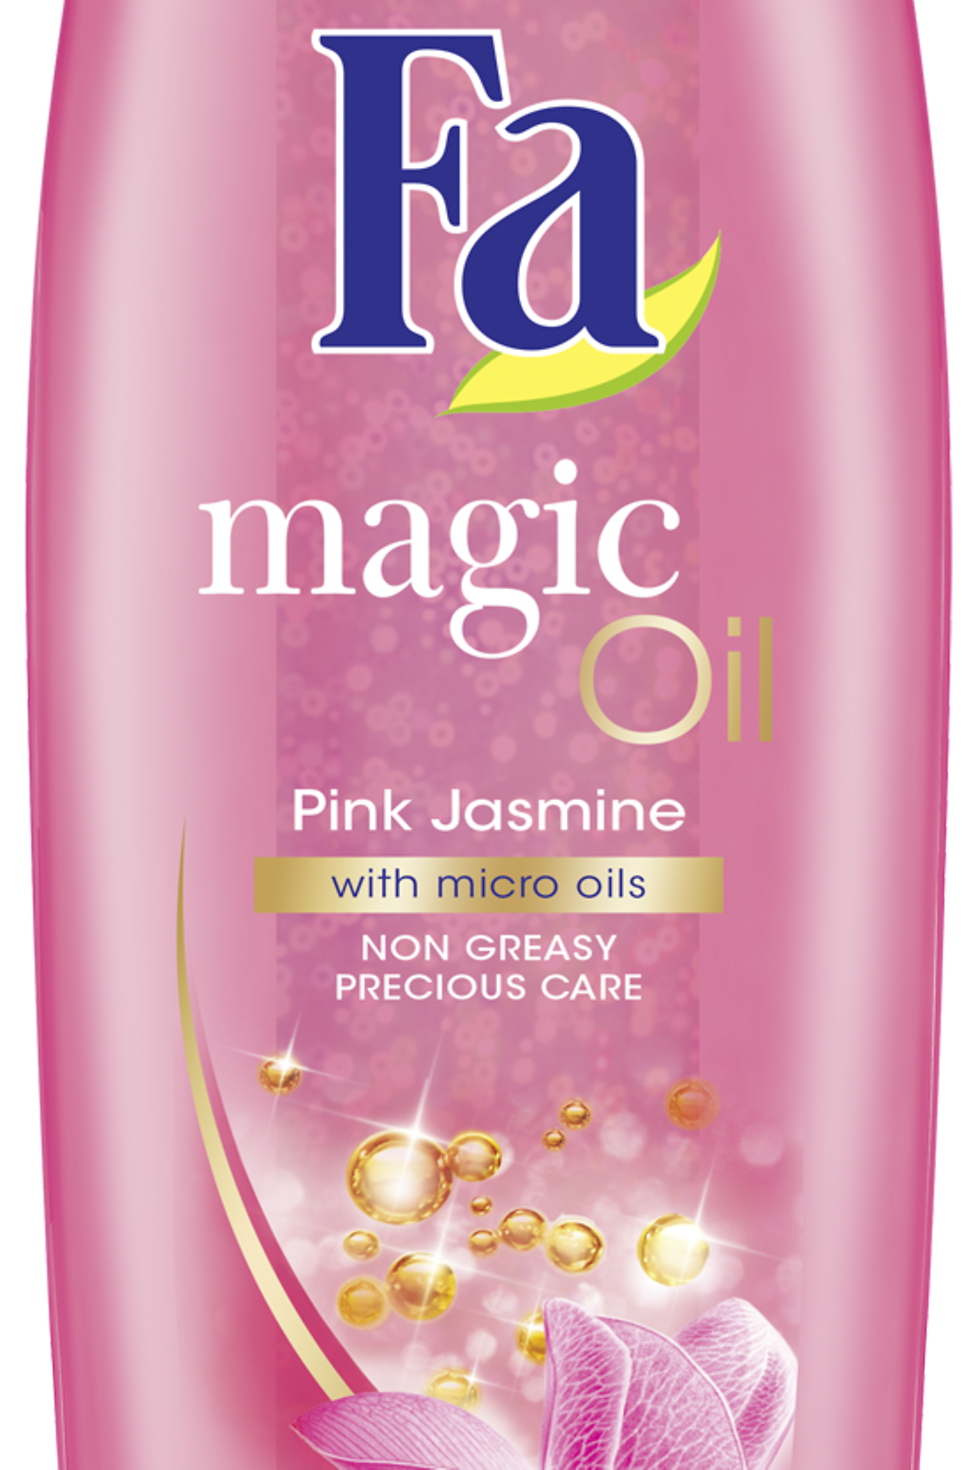 
Fa Magic Oil ružový jazmín, pena do kúpeľa